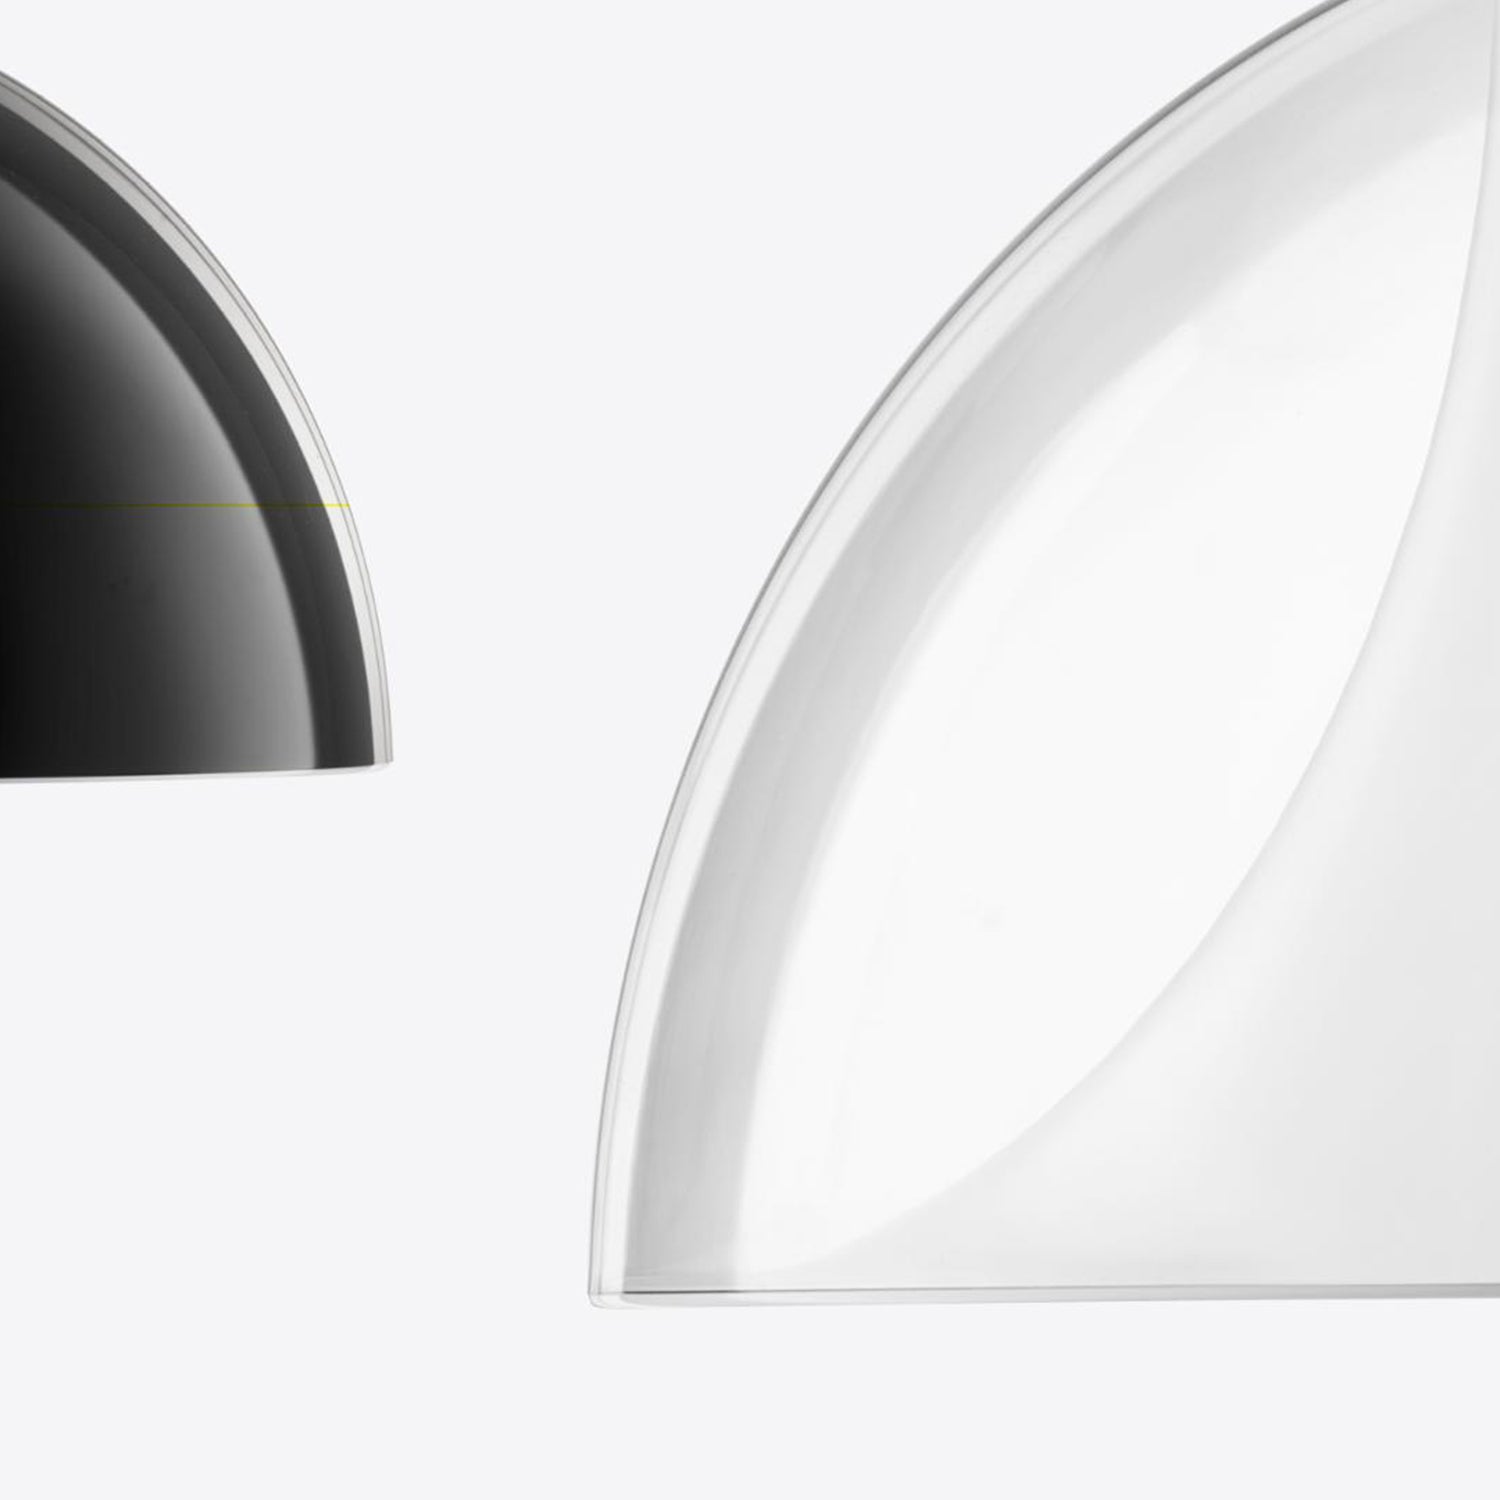 Pedrali L002 Pendant Lamp Black & White Details